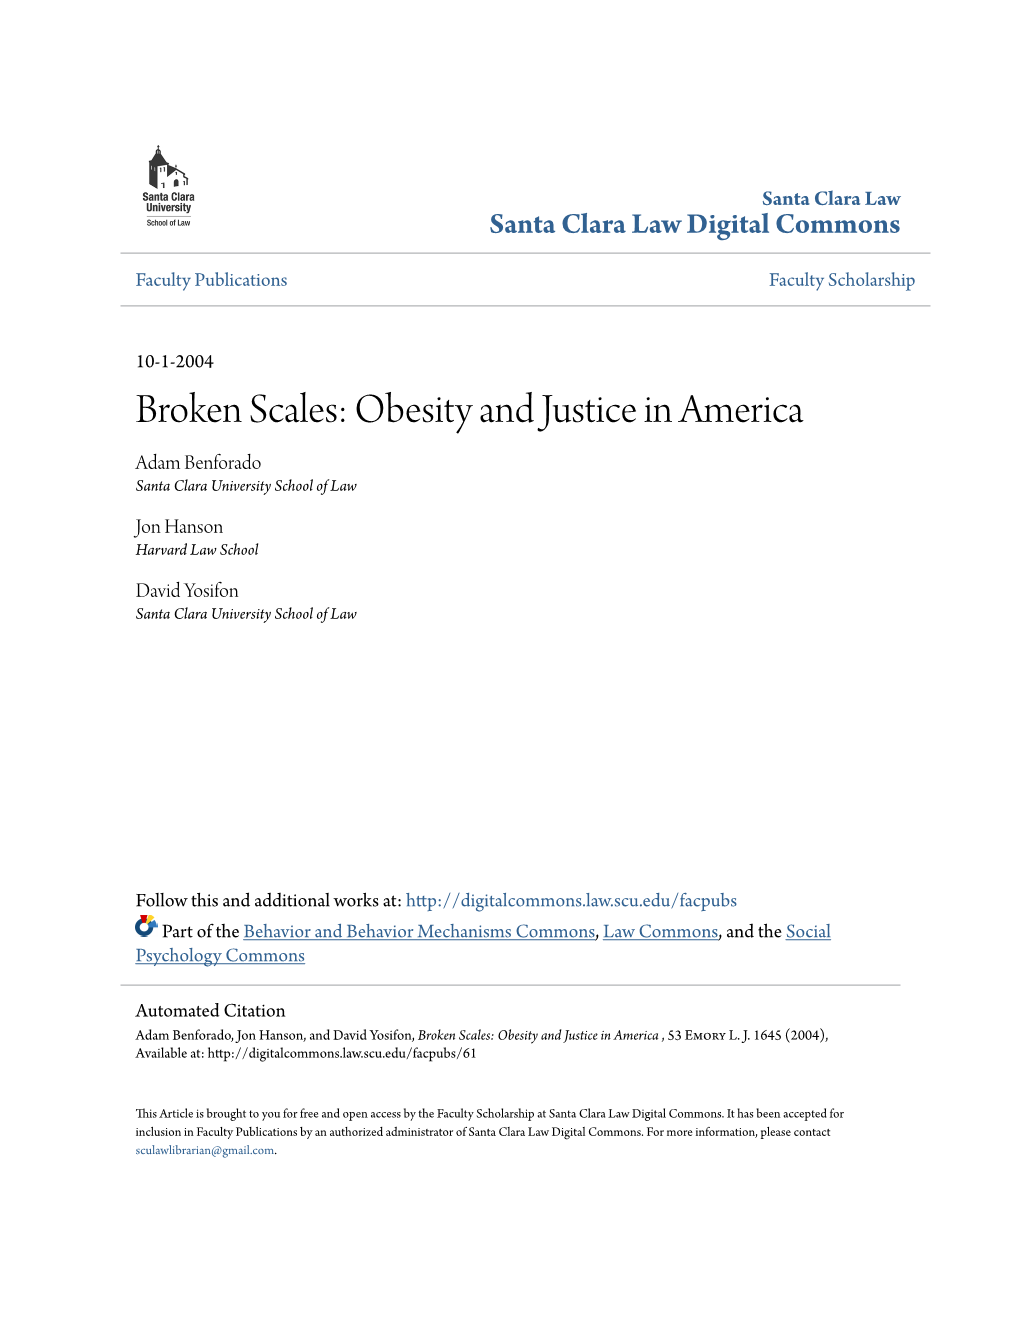 Broken Scales: Obesity and Justice in America Adam Benforado Santa Clara University School of Law